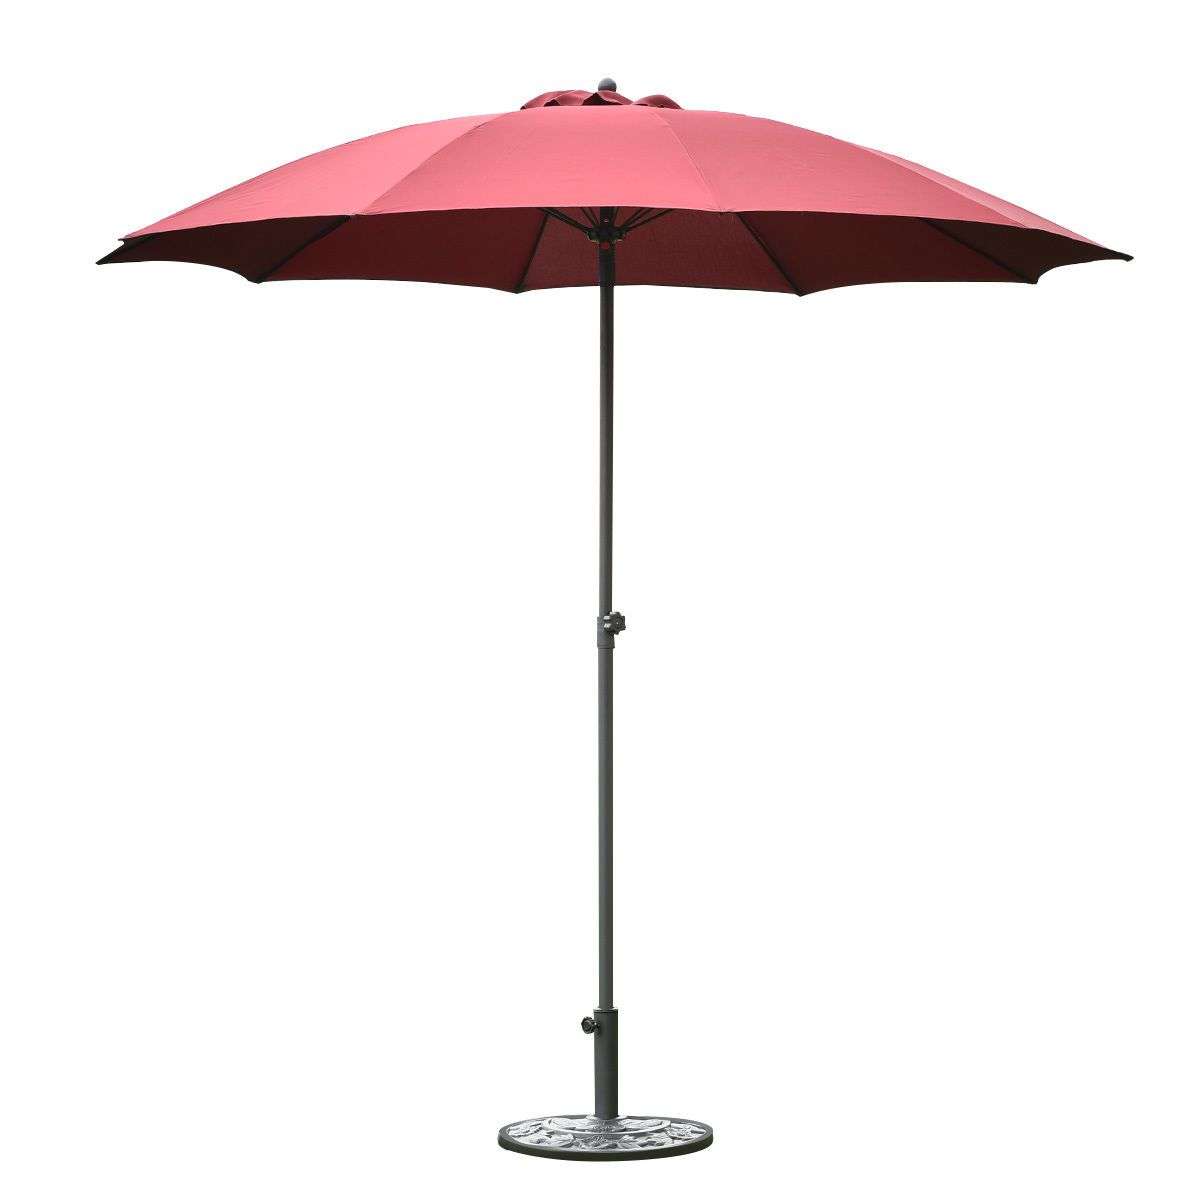 8.2Ft Height Adjustable Outdoor Patio Umbrella